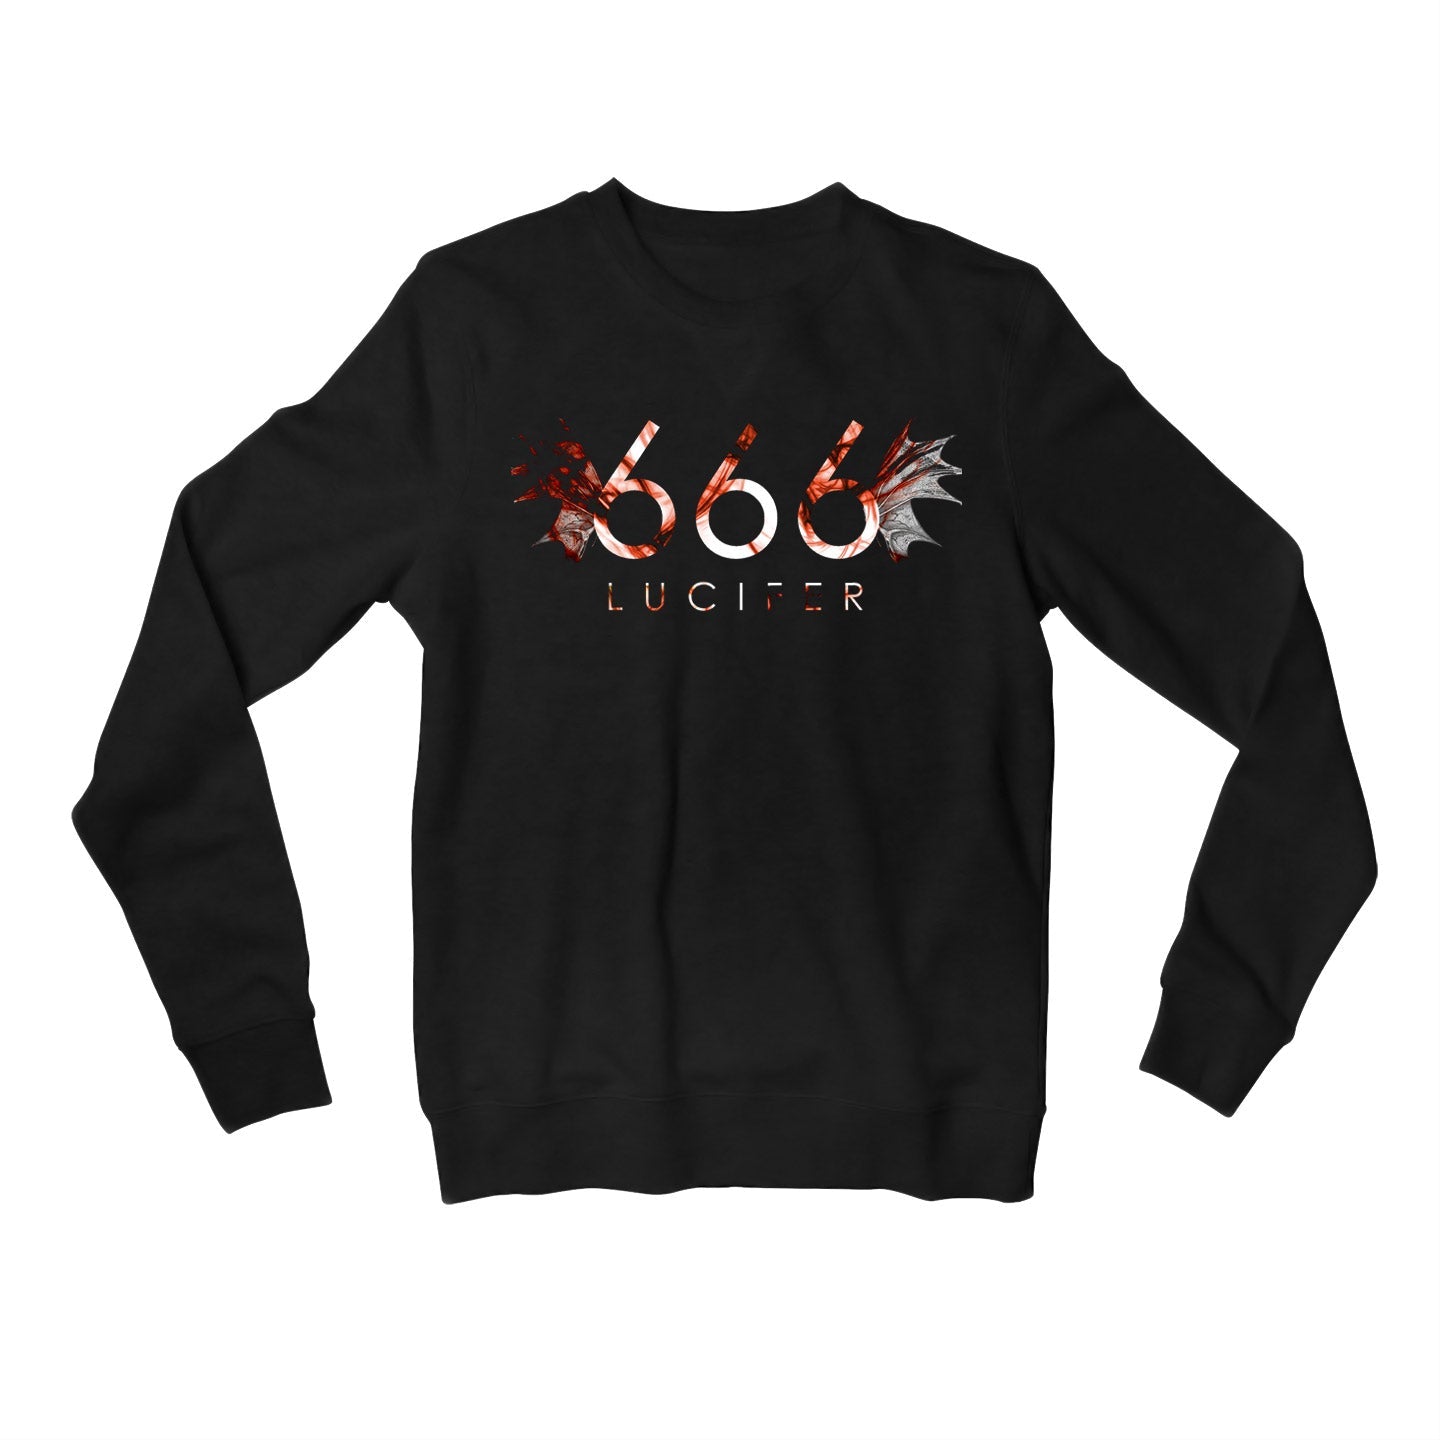 Lucifer Sweatshirt - 666 Sweatshirt The Banyan Tee TBT